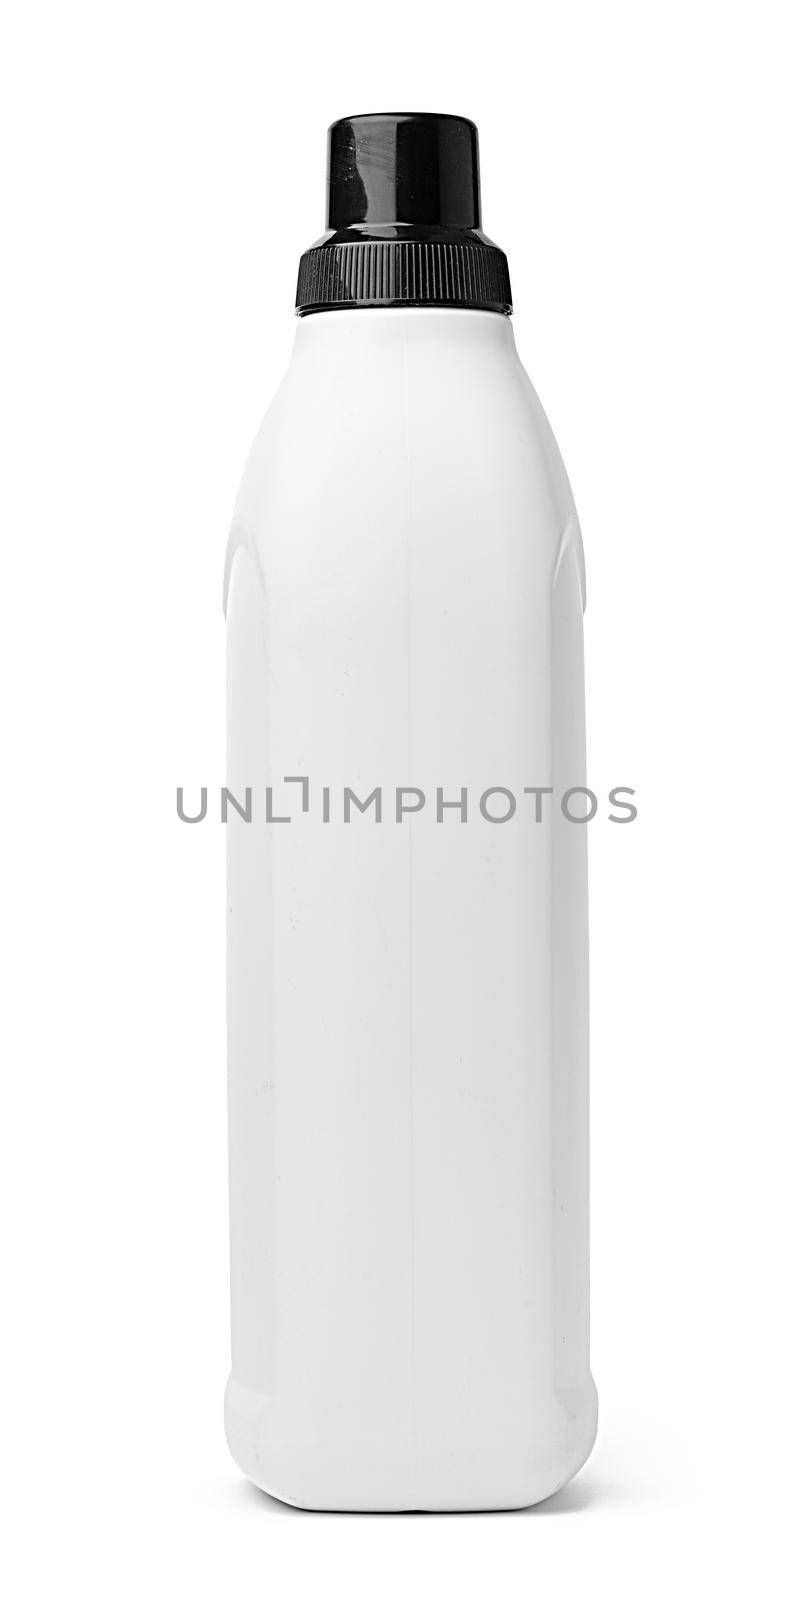 White plastic bottle of washing liquid isolated on white background by Fabrikasimf